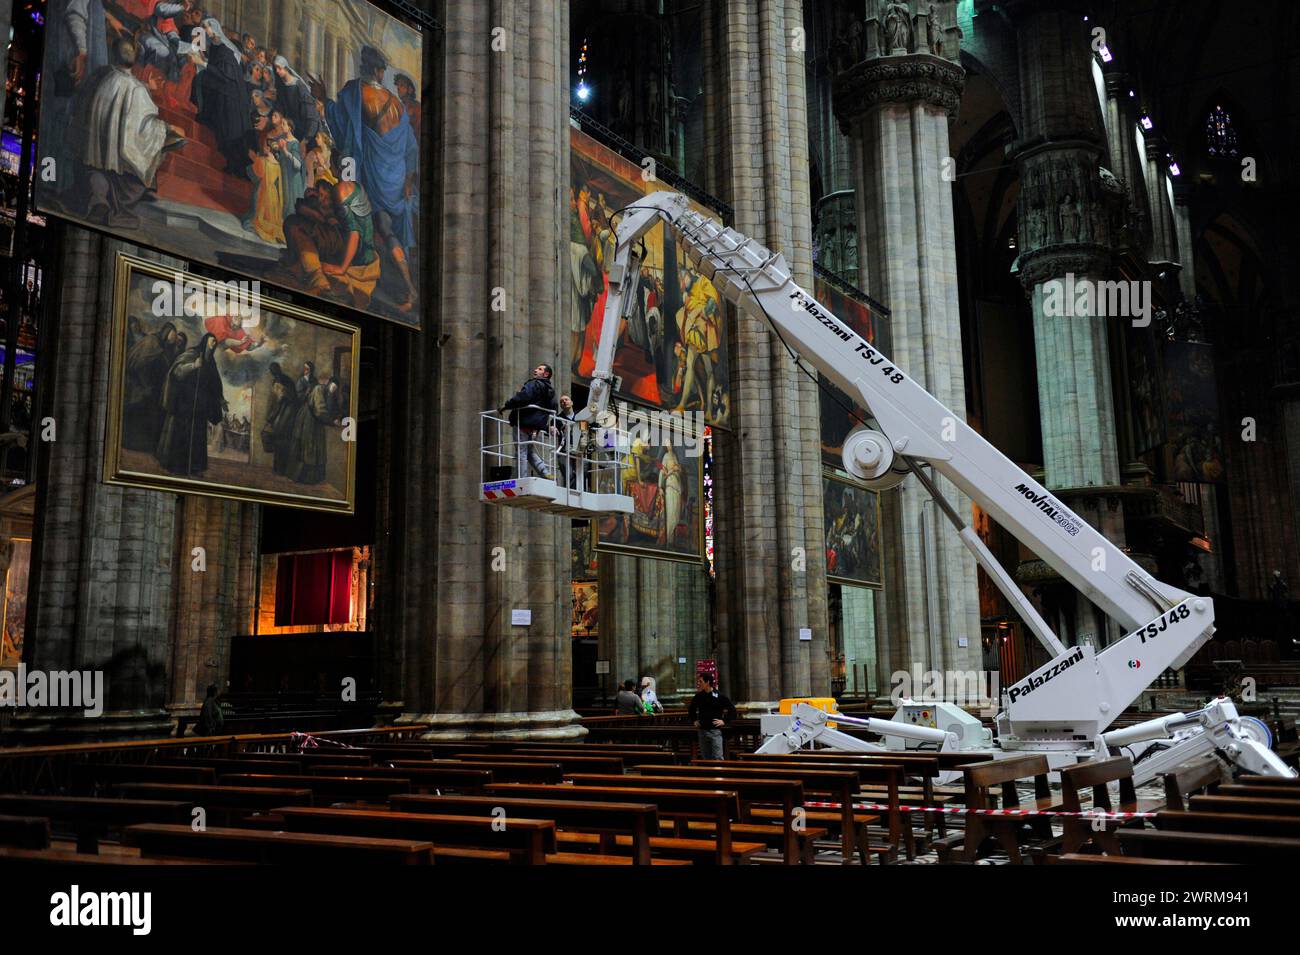 Travaux de restauration de peinture avec une grue à l'intérieur de la cathédrale de Milan Art restauré Duomo Milano peint des peintures anciennes Banque D'Images